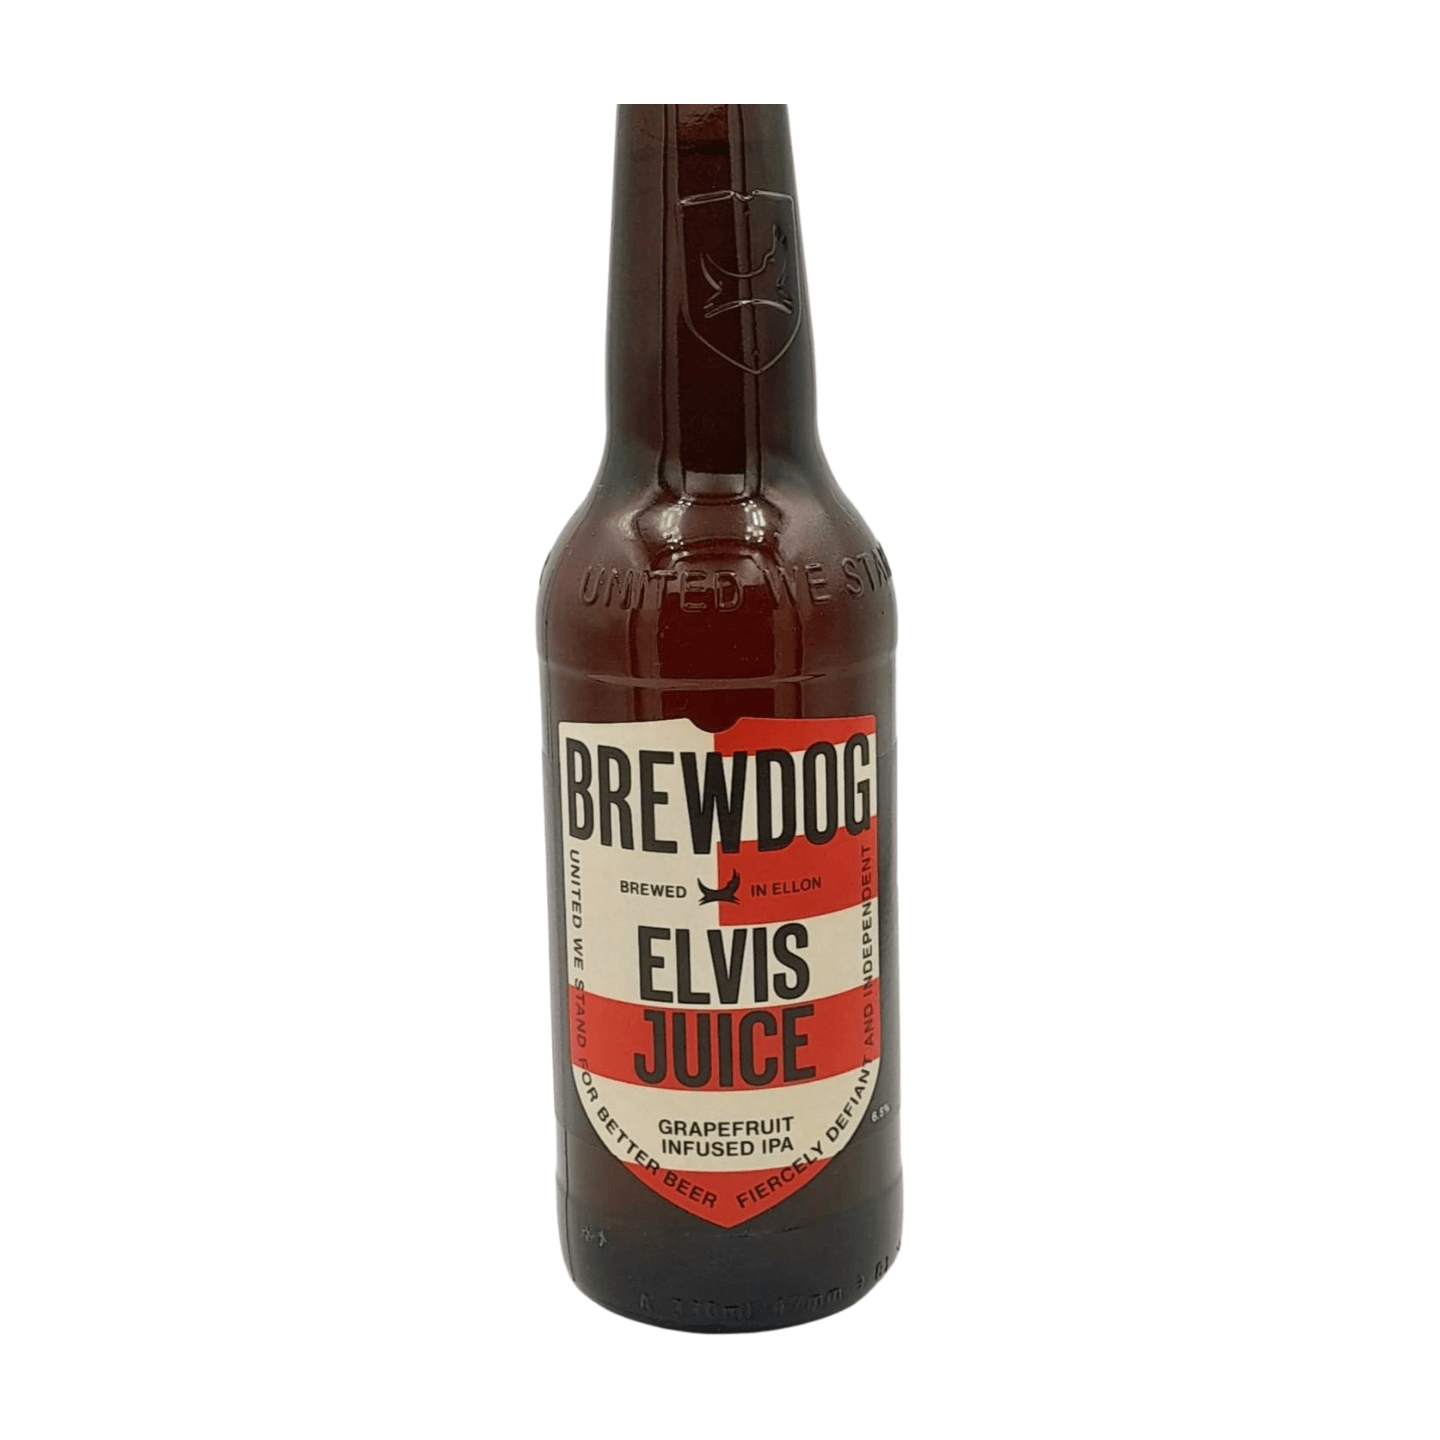 BrewDog Elvis Juice | Grapefruit IPA Webshop Online Verdins Bierwinkel Rotterdam